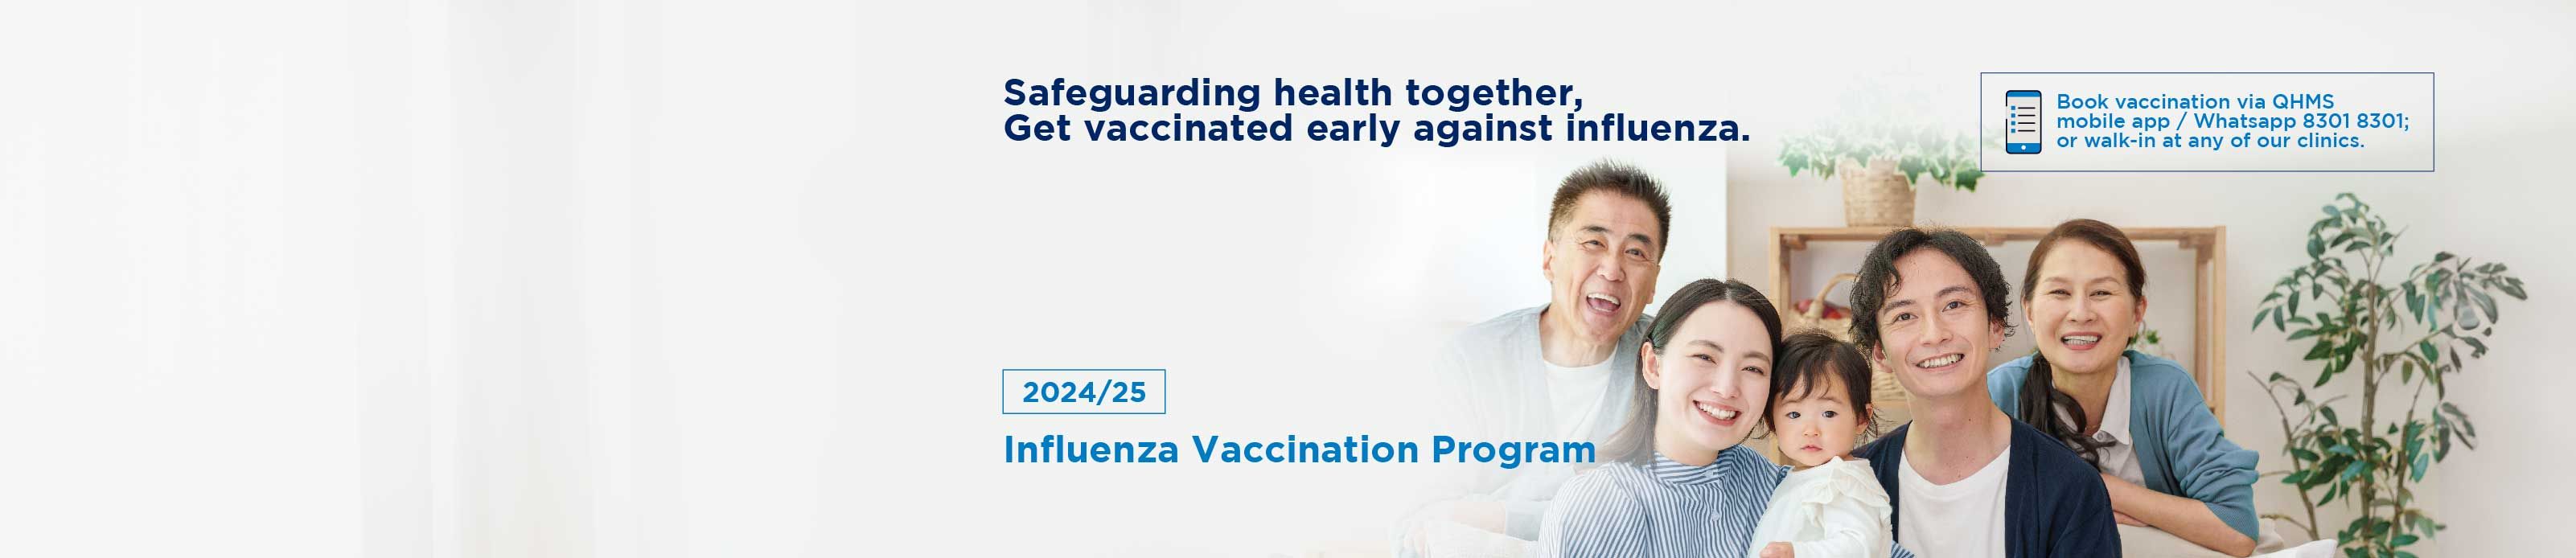 2024 25 QHMS Flu campaign